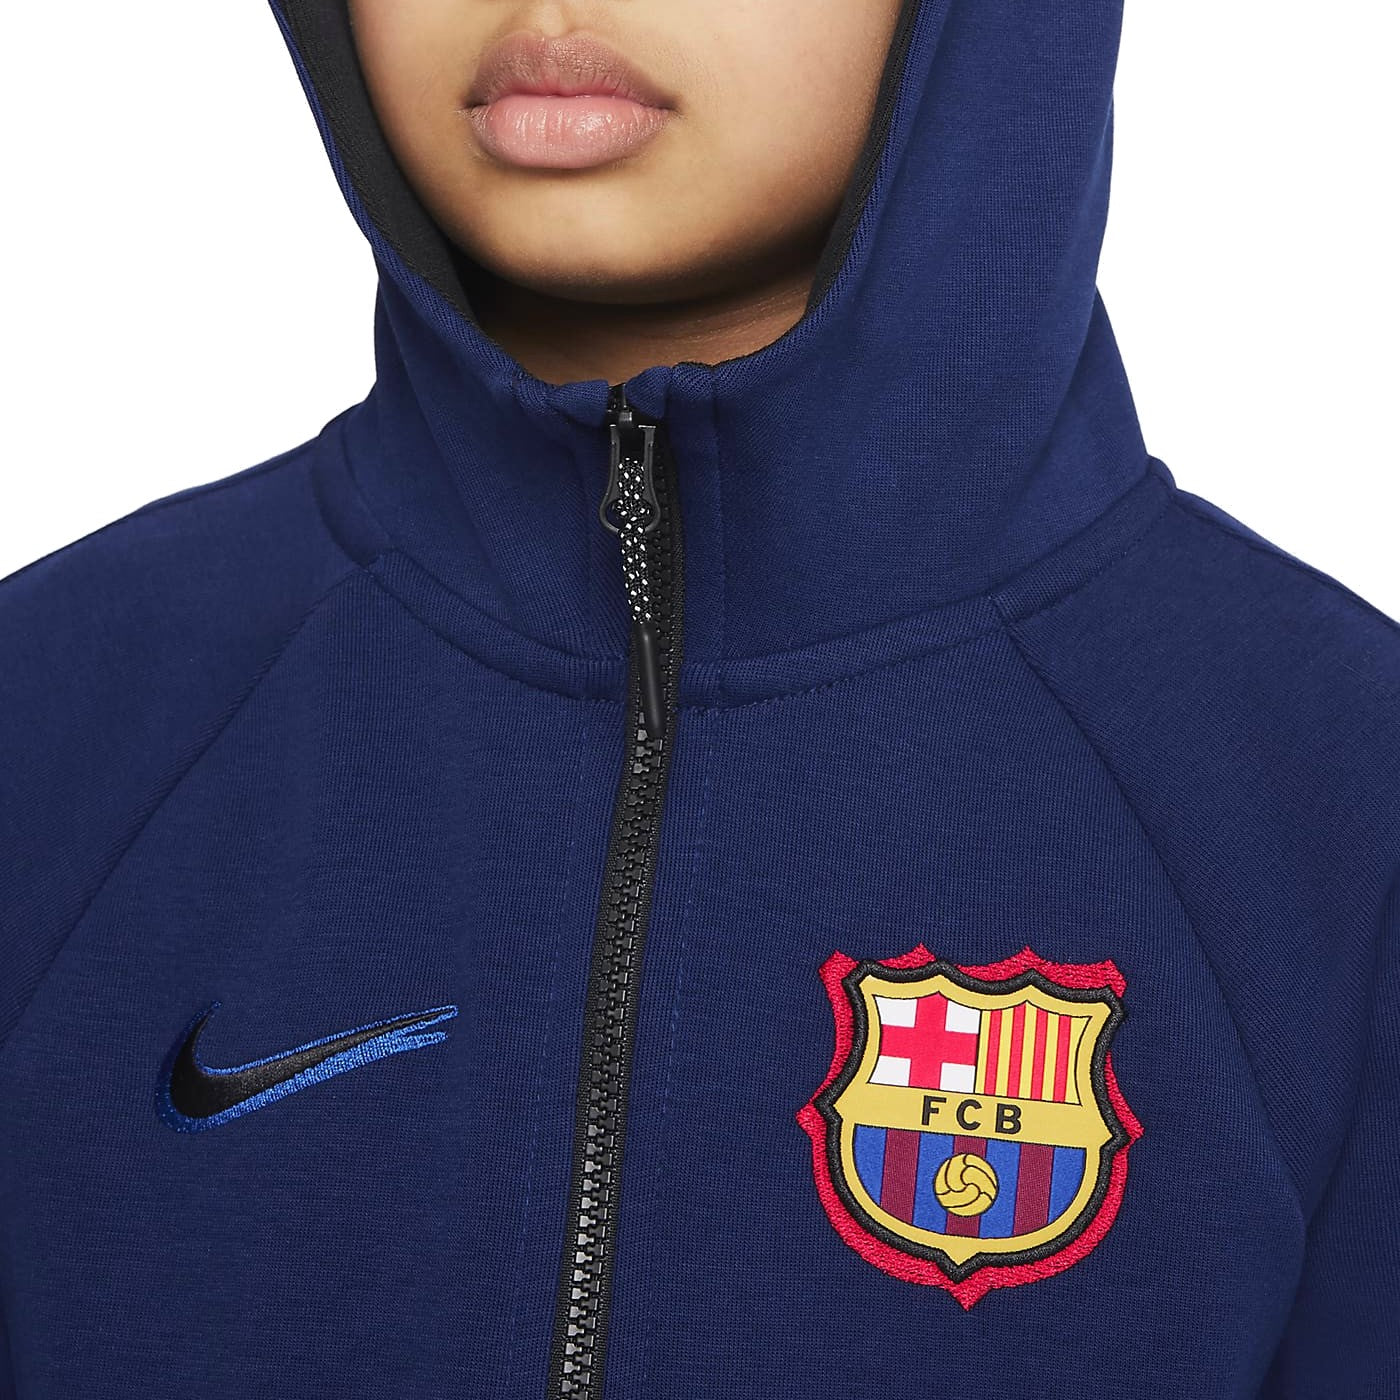 Ik denk dat ik ziek ben Beeldhouwer Opsommen Kids - FC Barcelona navy Tech Fleece presentation tracksuit 2022 - Nike –  SoccerTracksuits.com